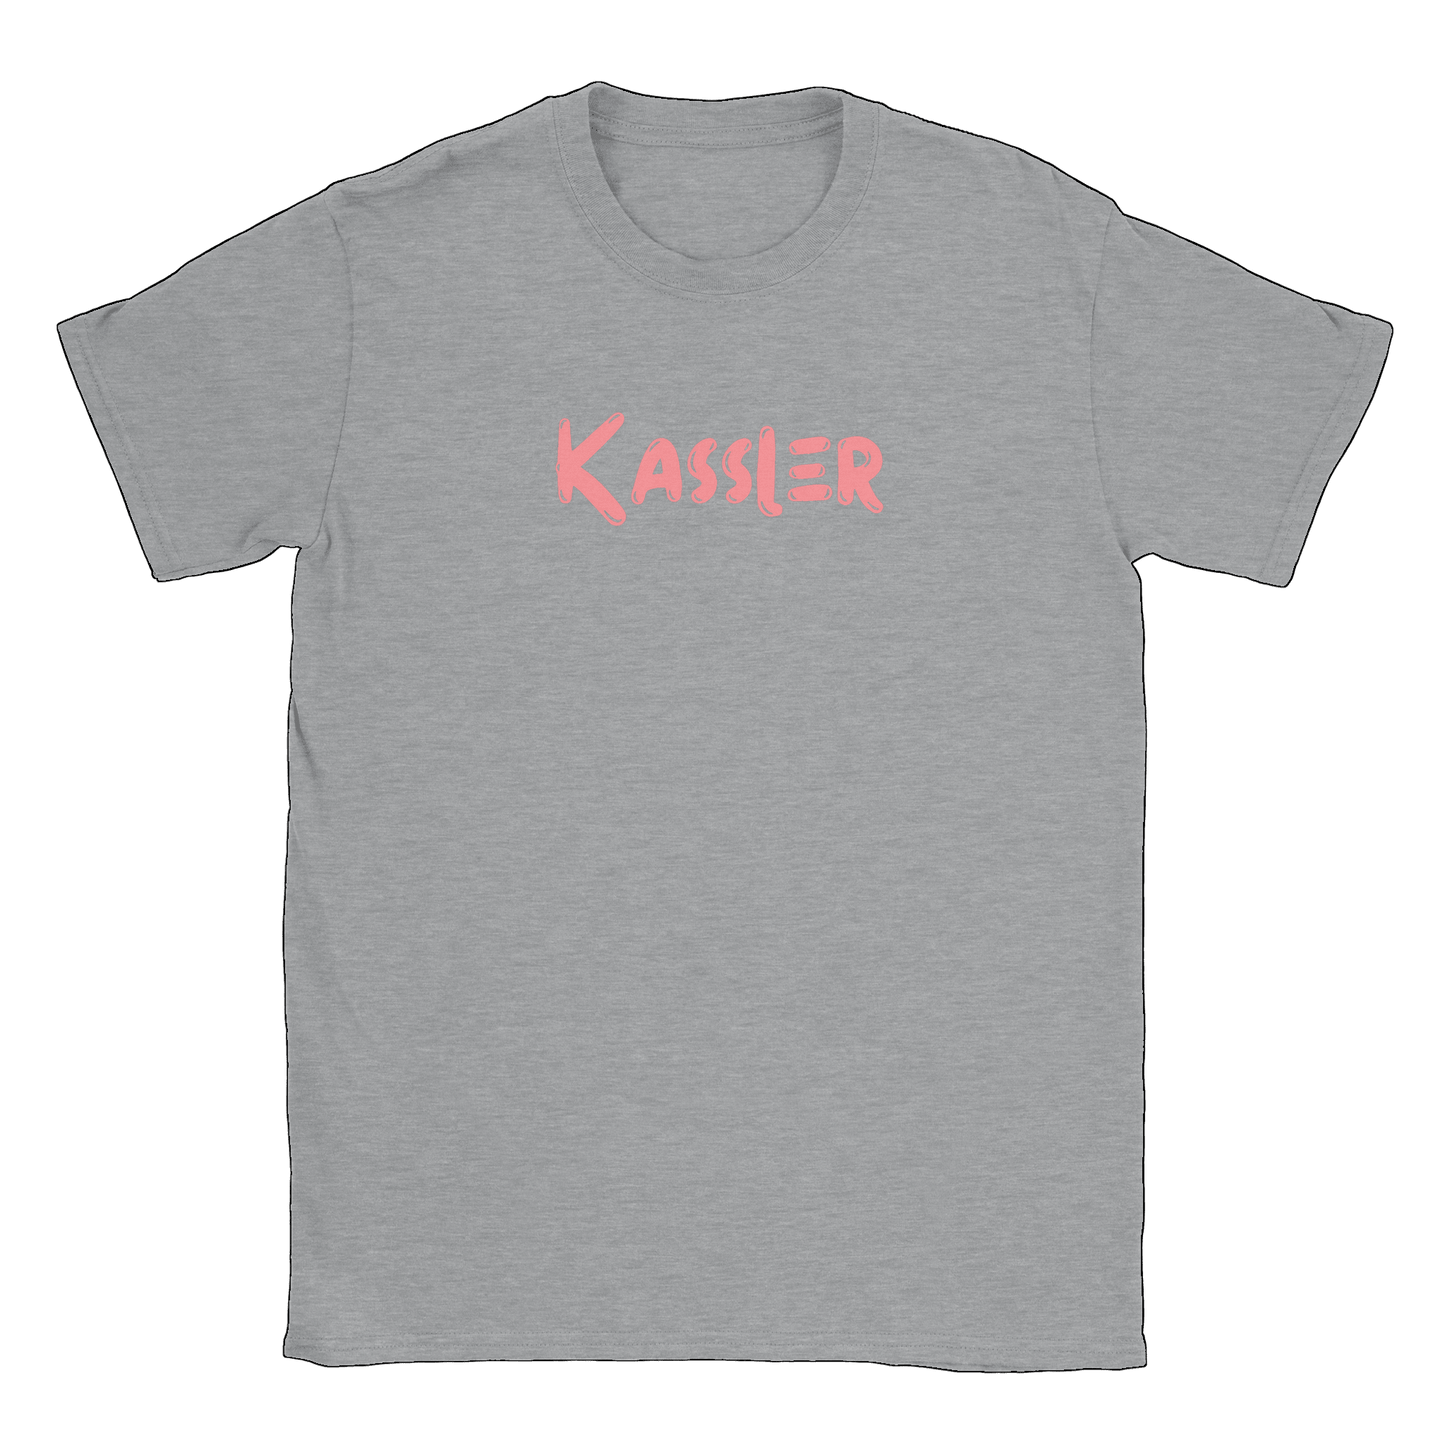 Kassler - T-shirt Sports Grey